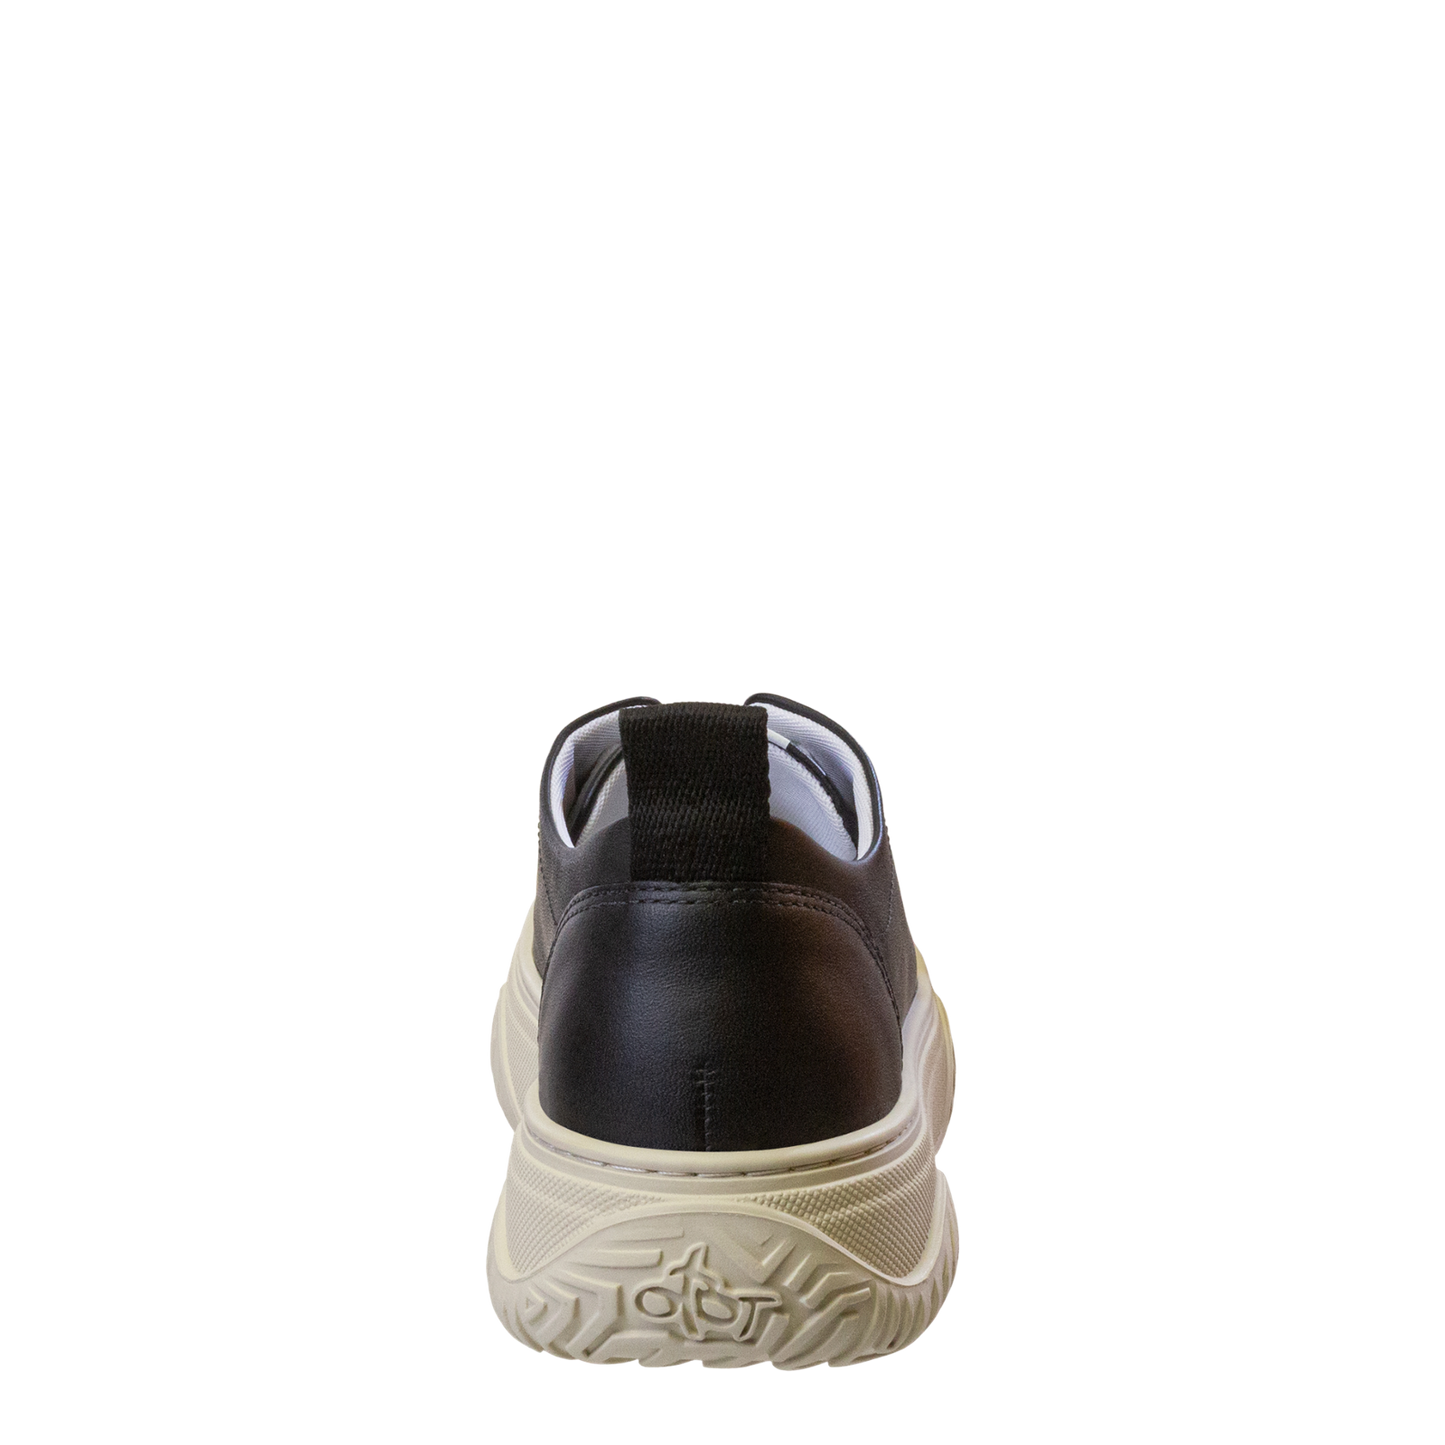 OTBT - PANGEA in BLACK Court Sneakers